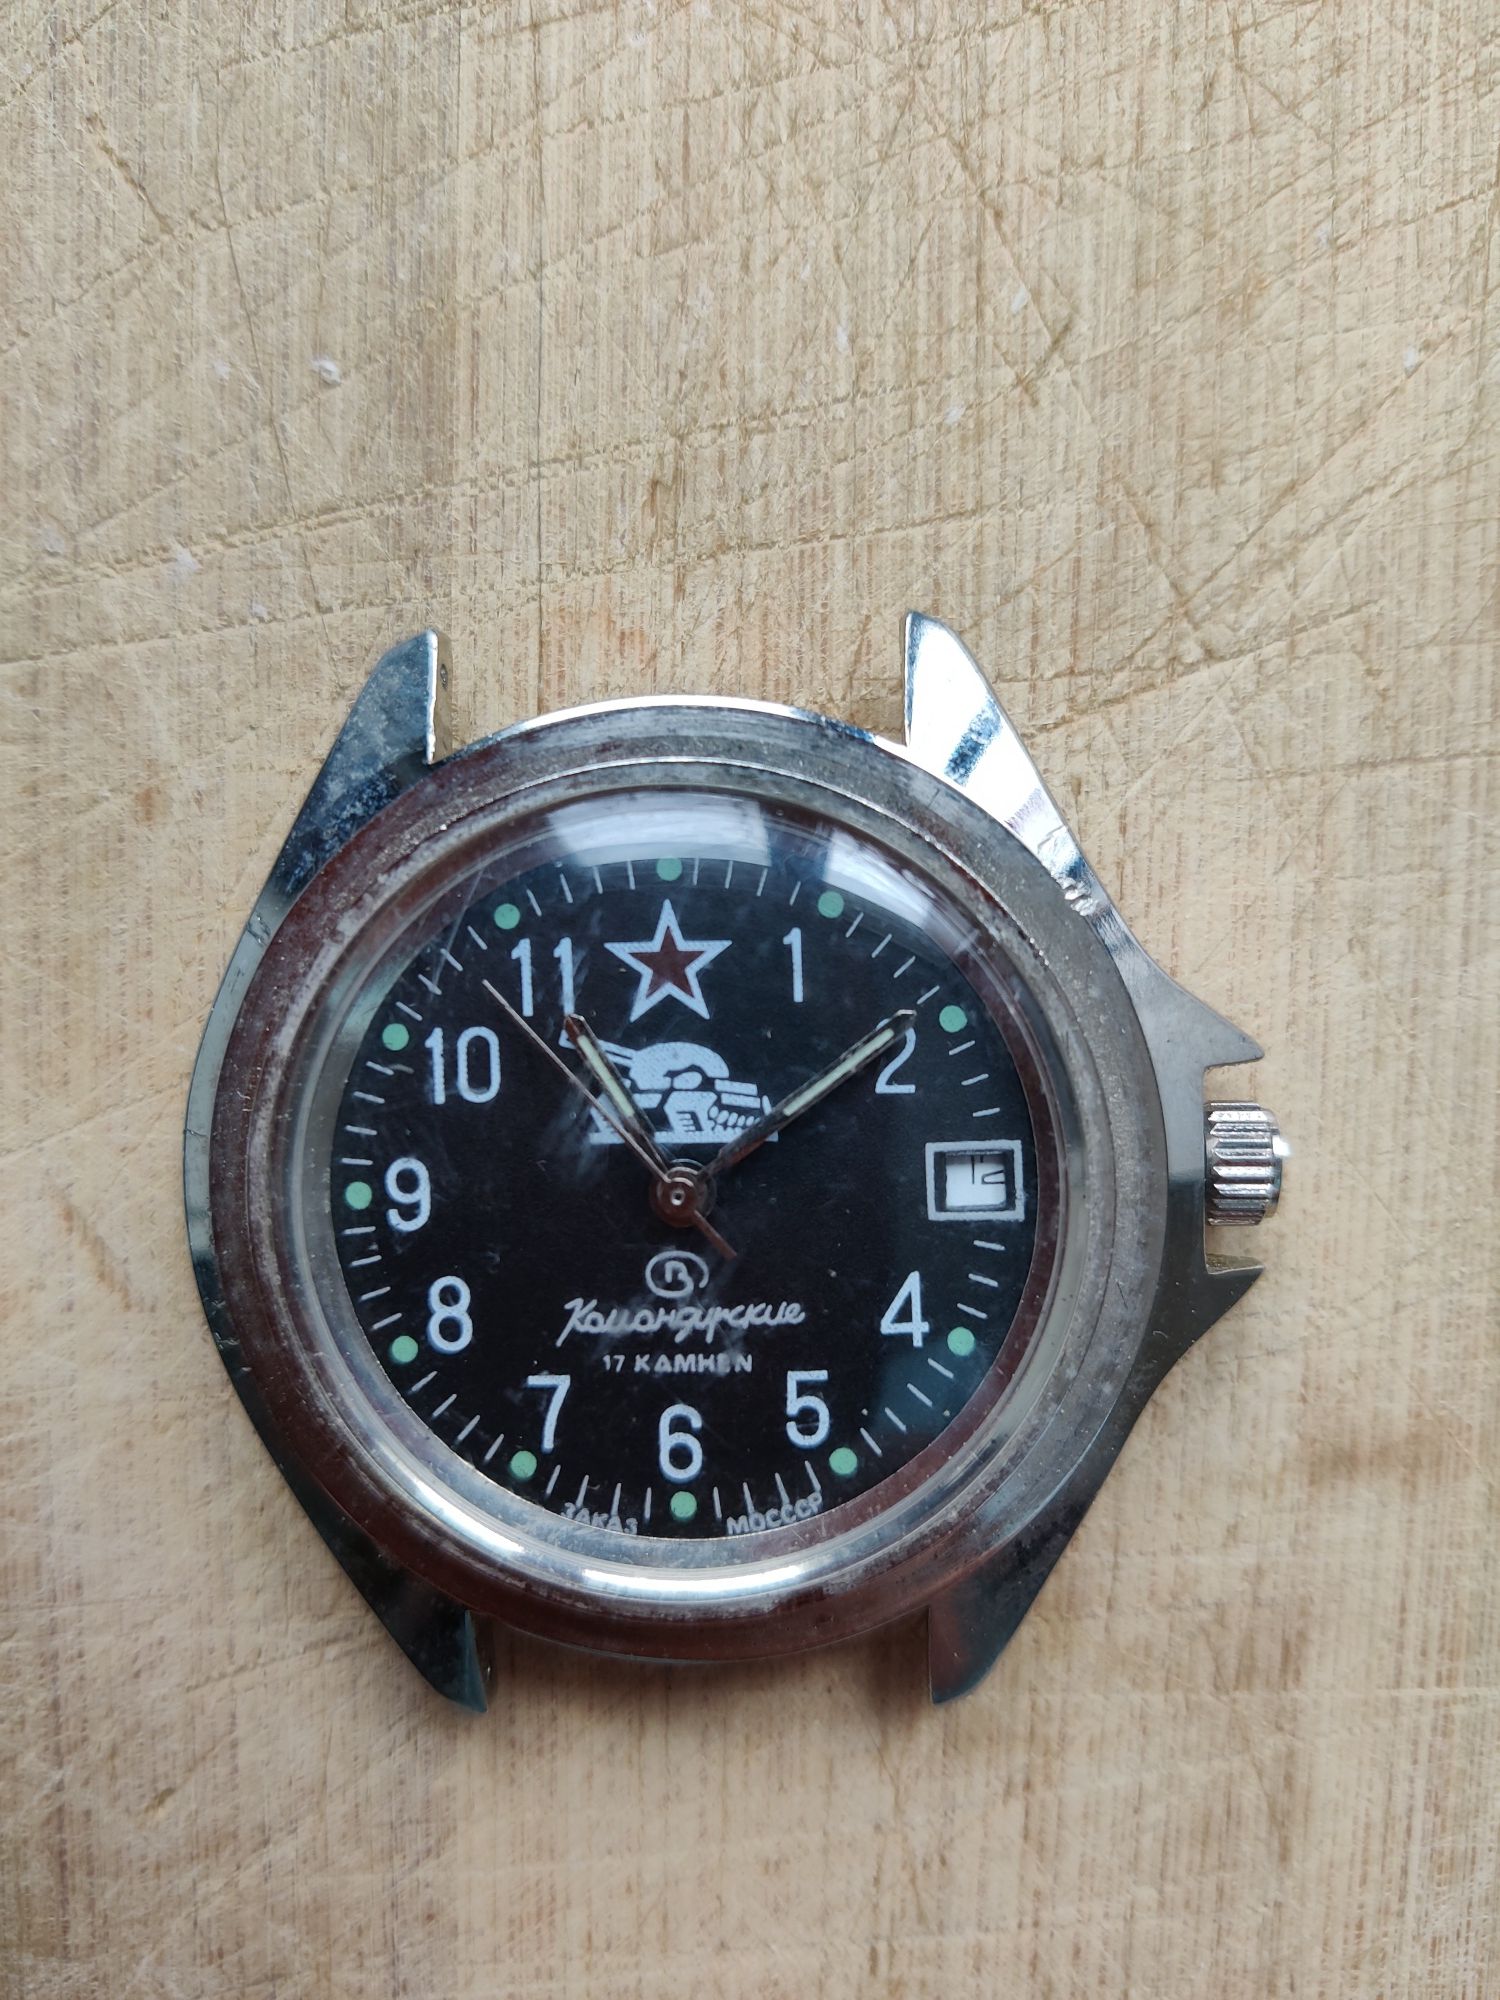 Ръчен командирски часовник от СССР